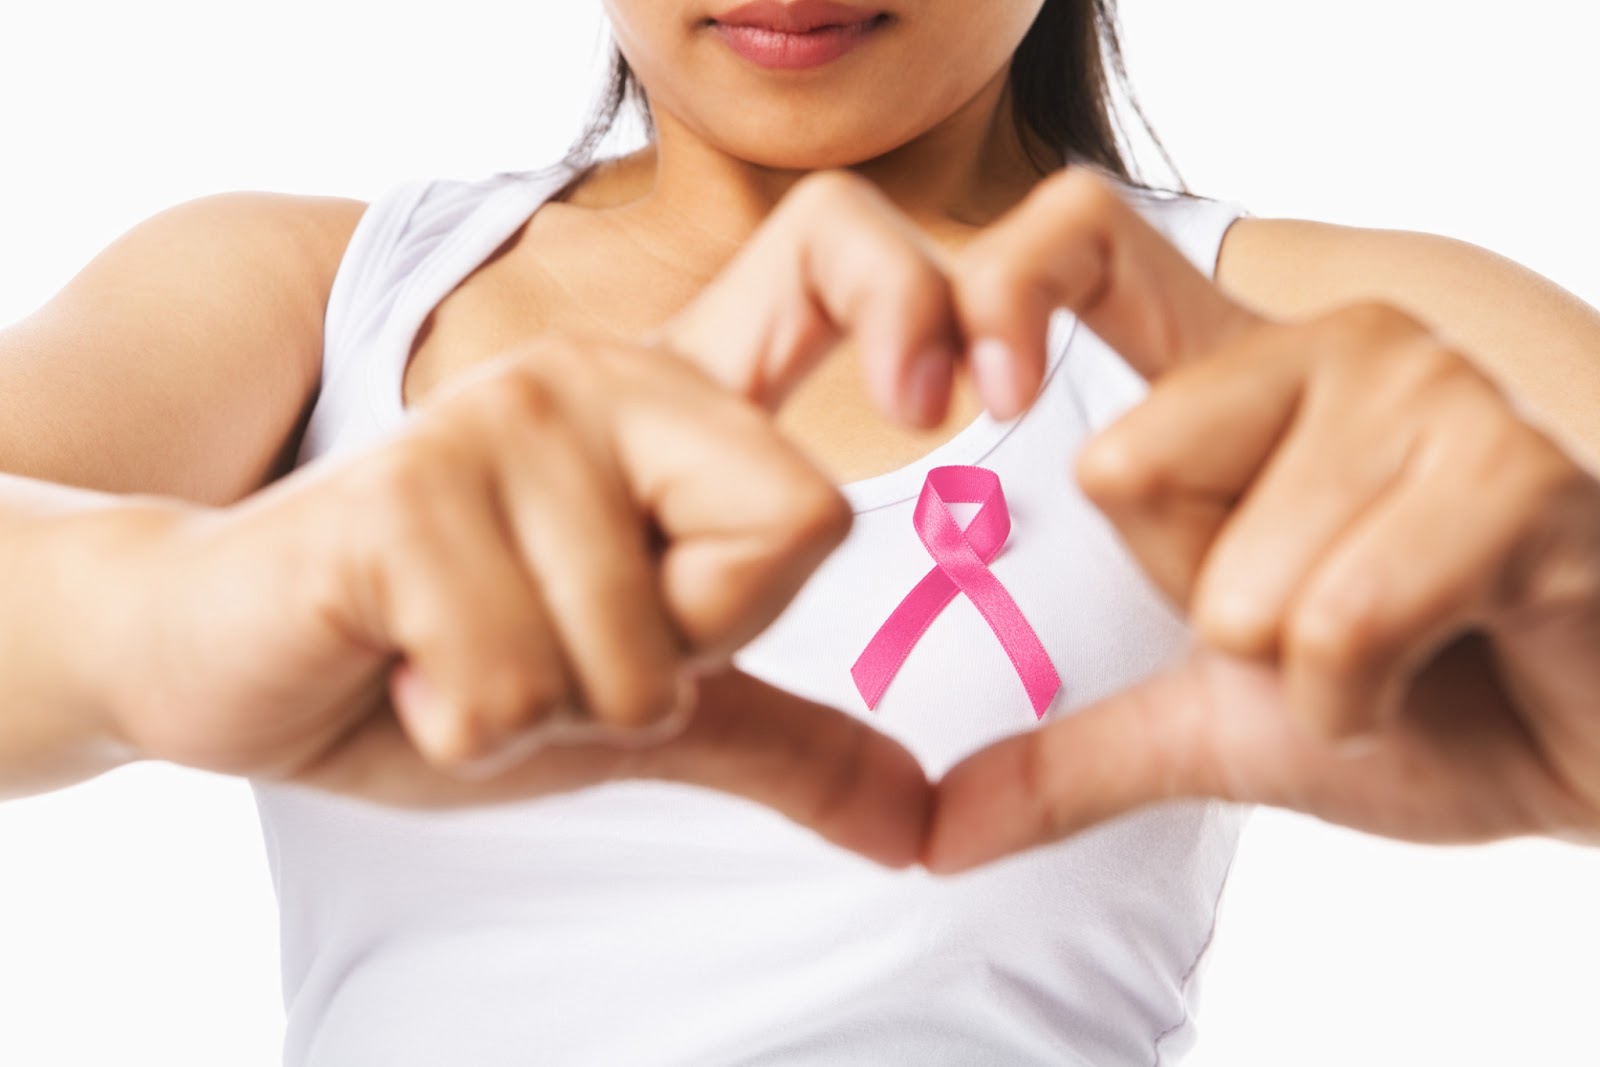 Ung thư vú là dạng ung thư thường gặp nhất ở phụ nữ trên toàn thế giới